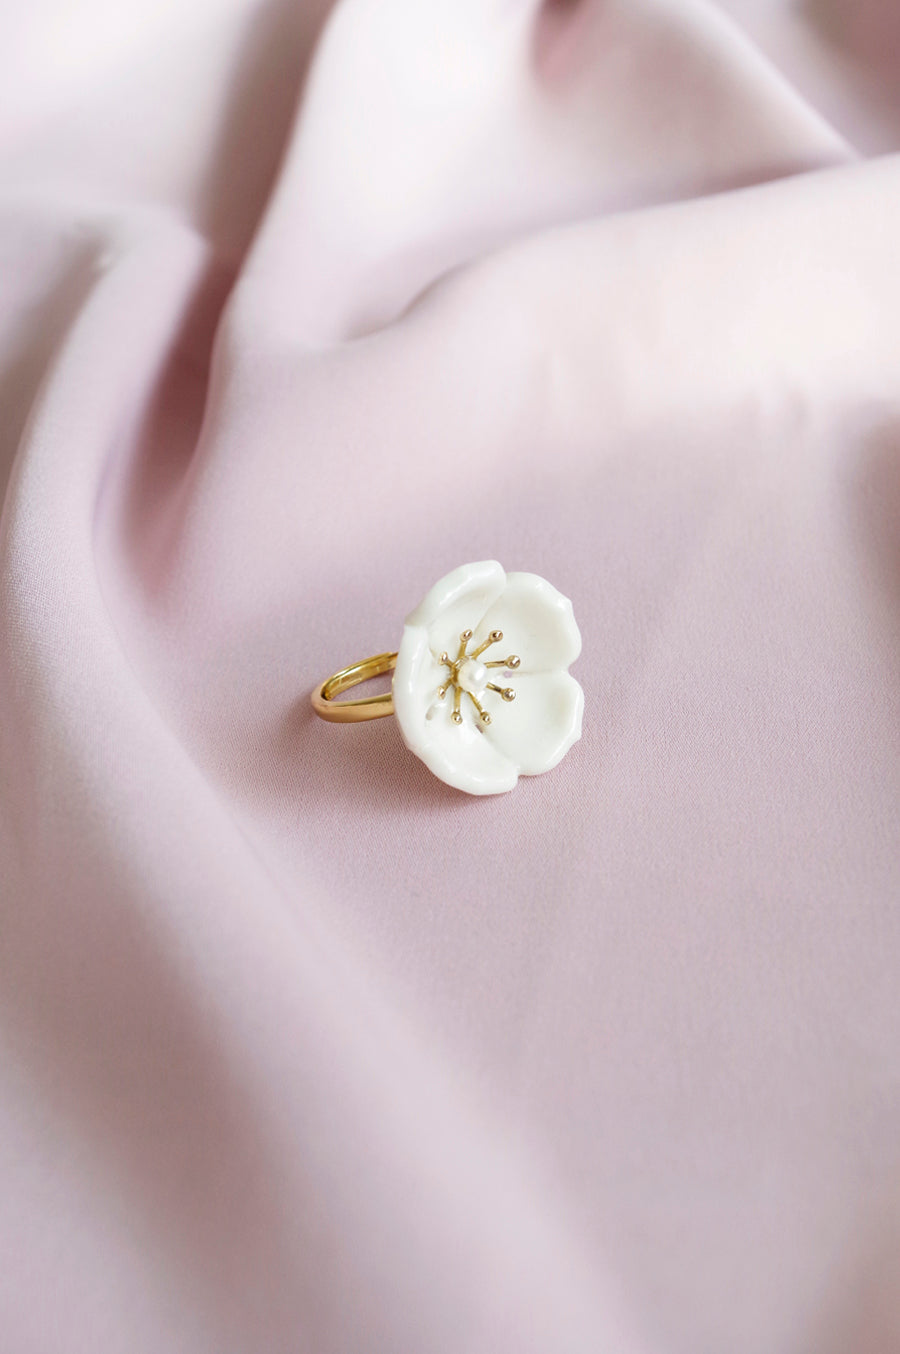 Snow-White Porcelain Plum Blossom Ring